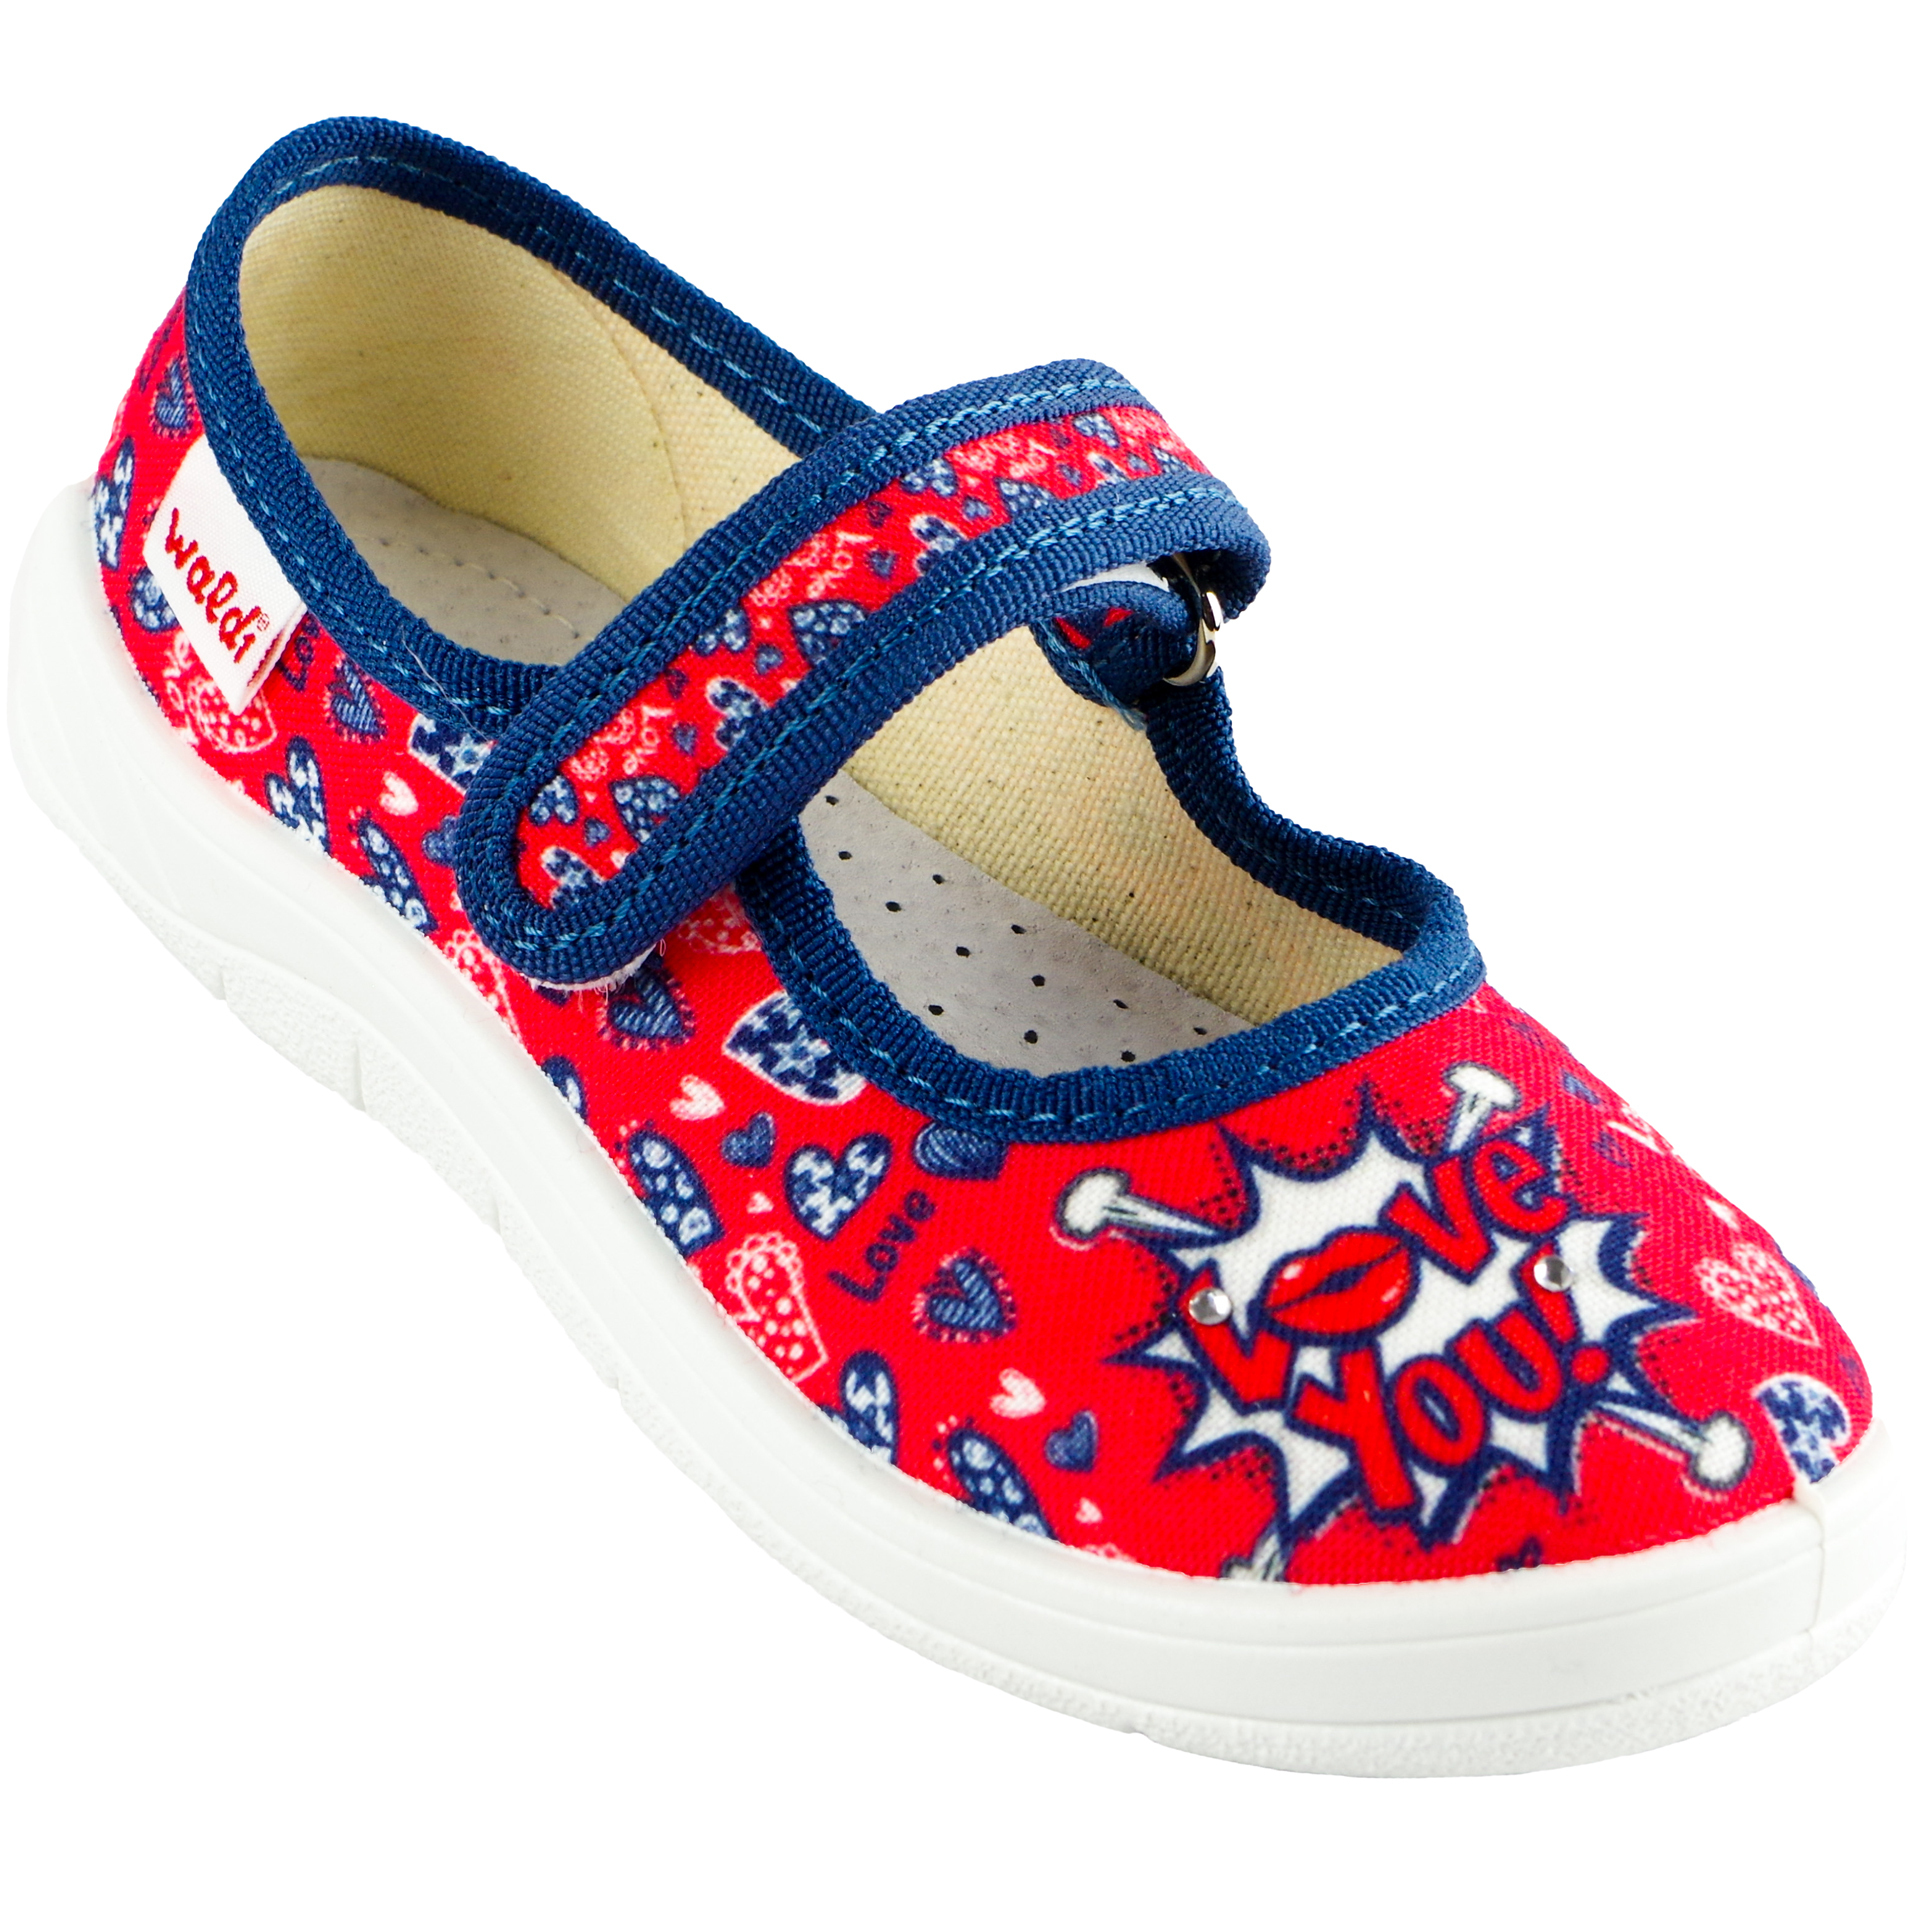 Текстильная обувь для девочек Тапочки Катя (1818) цвет Красный 24-30 размеры – Sole Kids. Фото 1